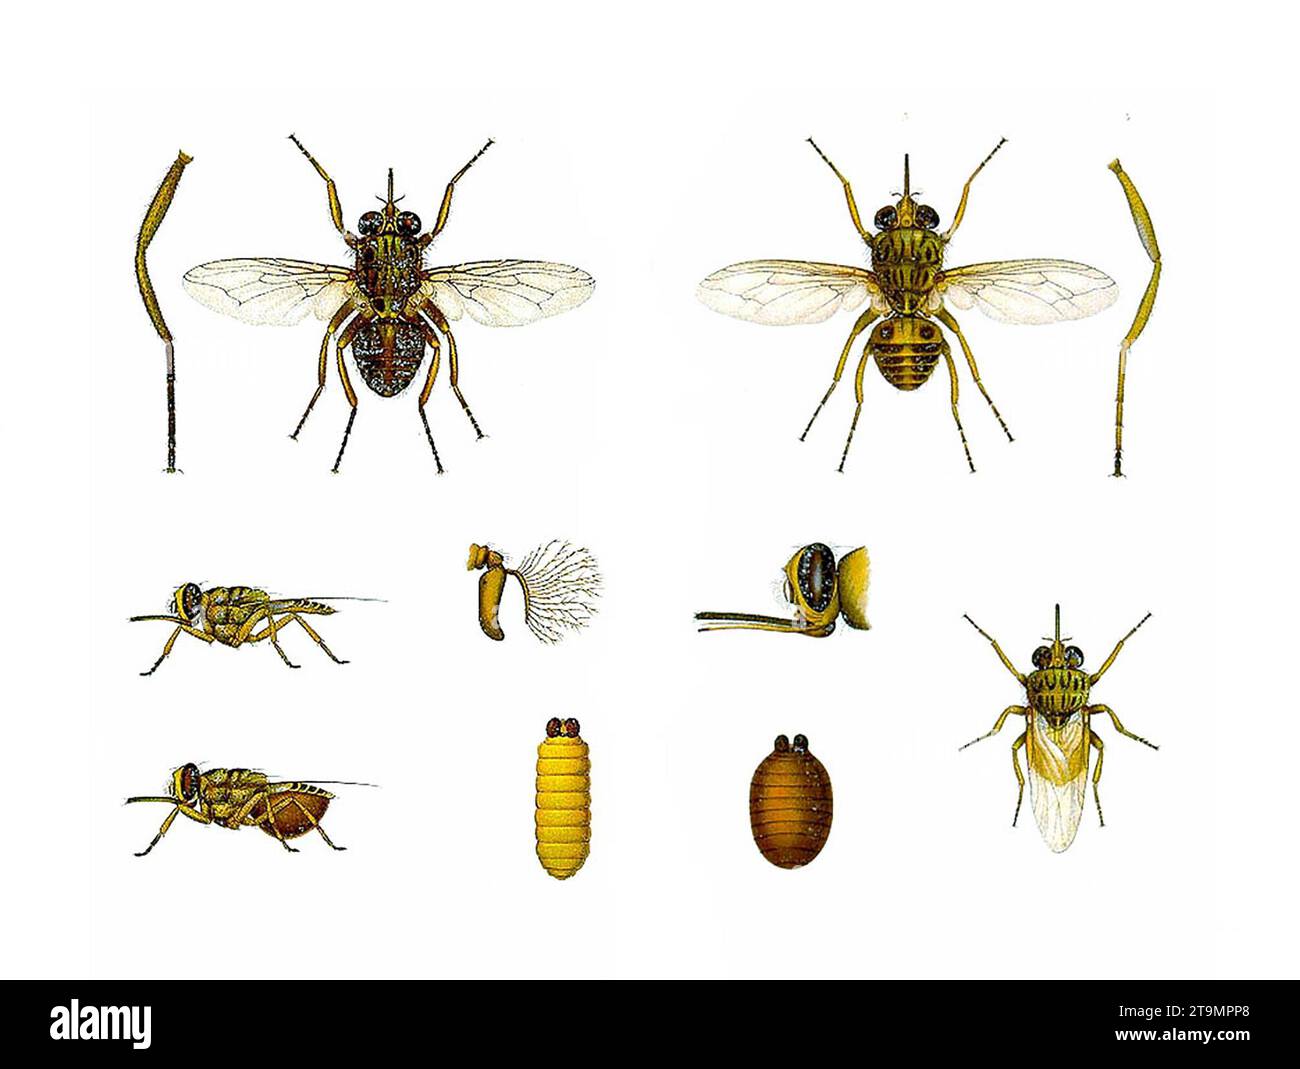 Tsetse Fly. Illustration of a Tsetse fly, Glossina palpalis morsitans Stock Photo